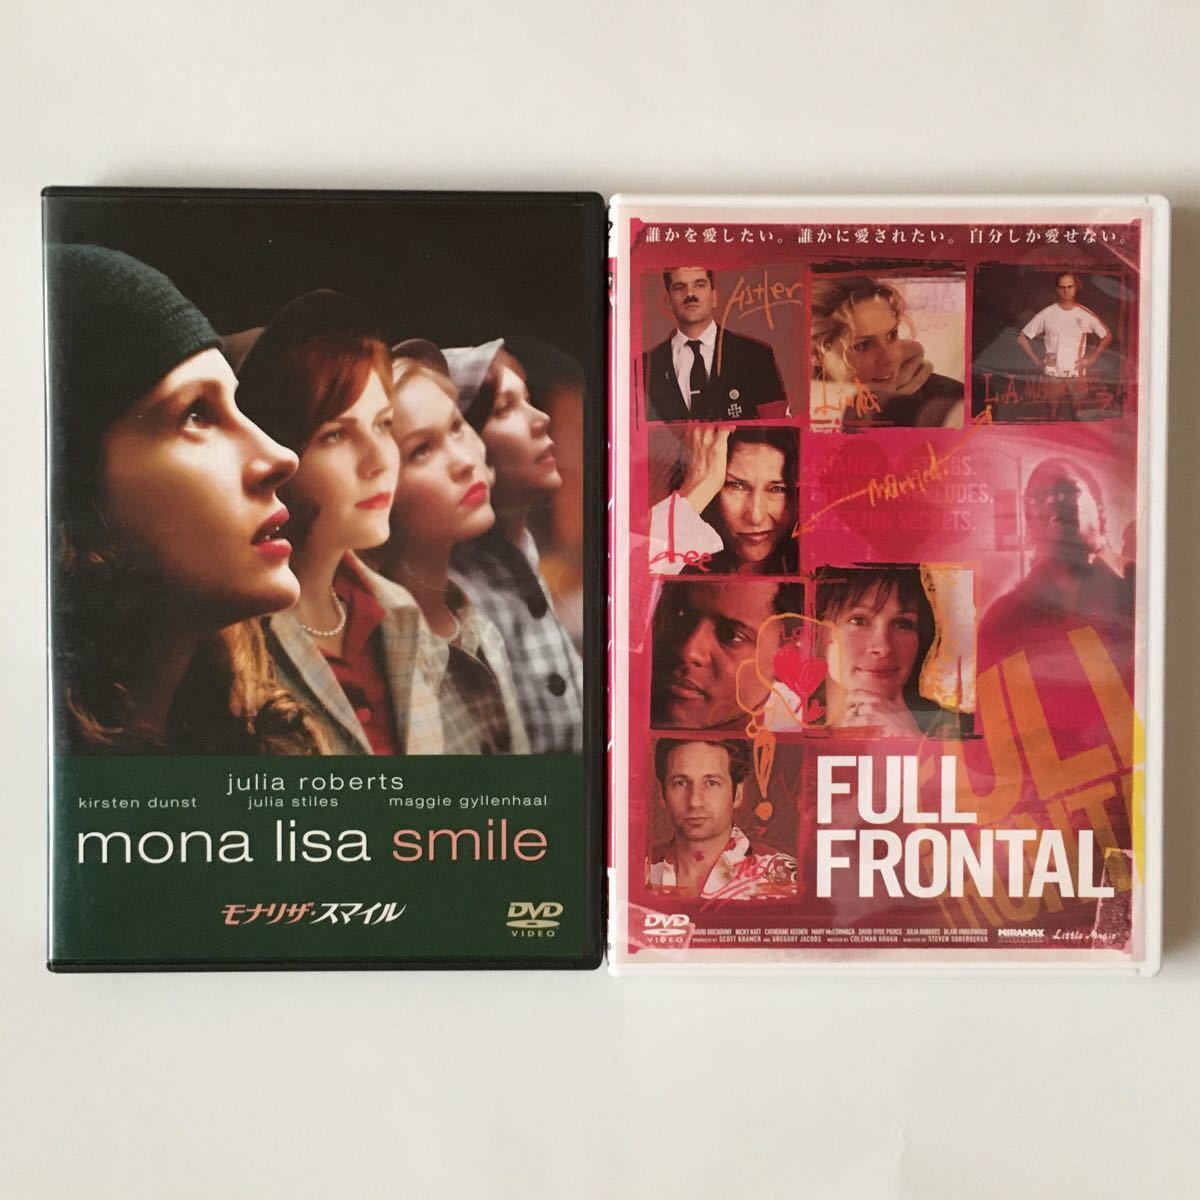 フルフロンタル フル・フロンタル DVD dvd モナリザスマイル モナリザ・スマイル モナリザ ジュリア・ロバーツ ソダーバーグ